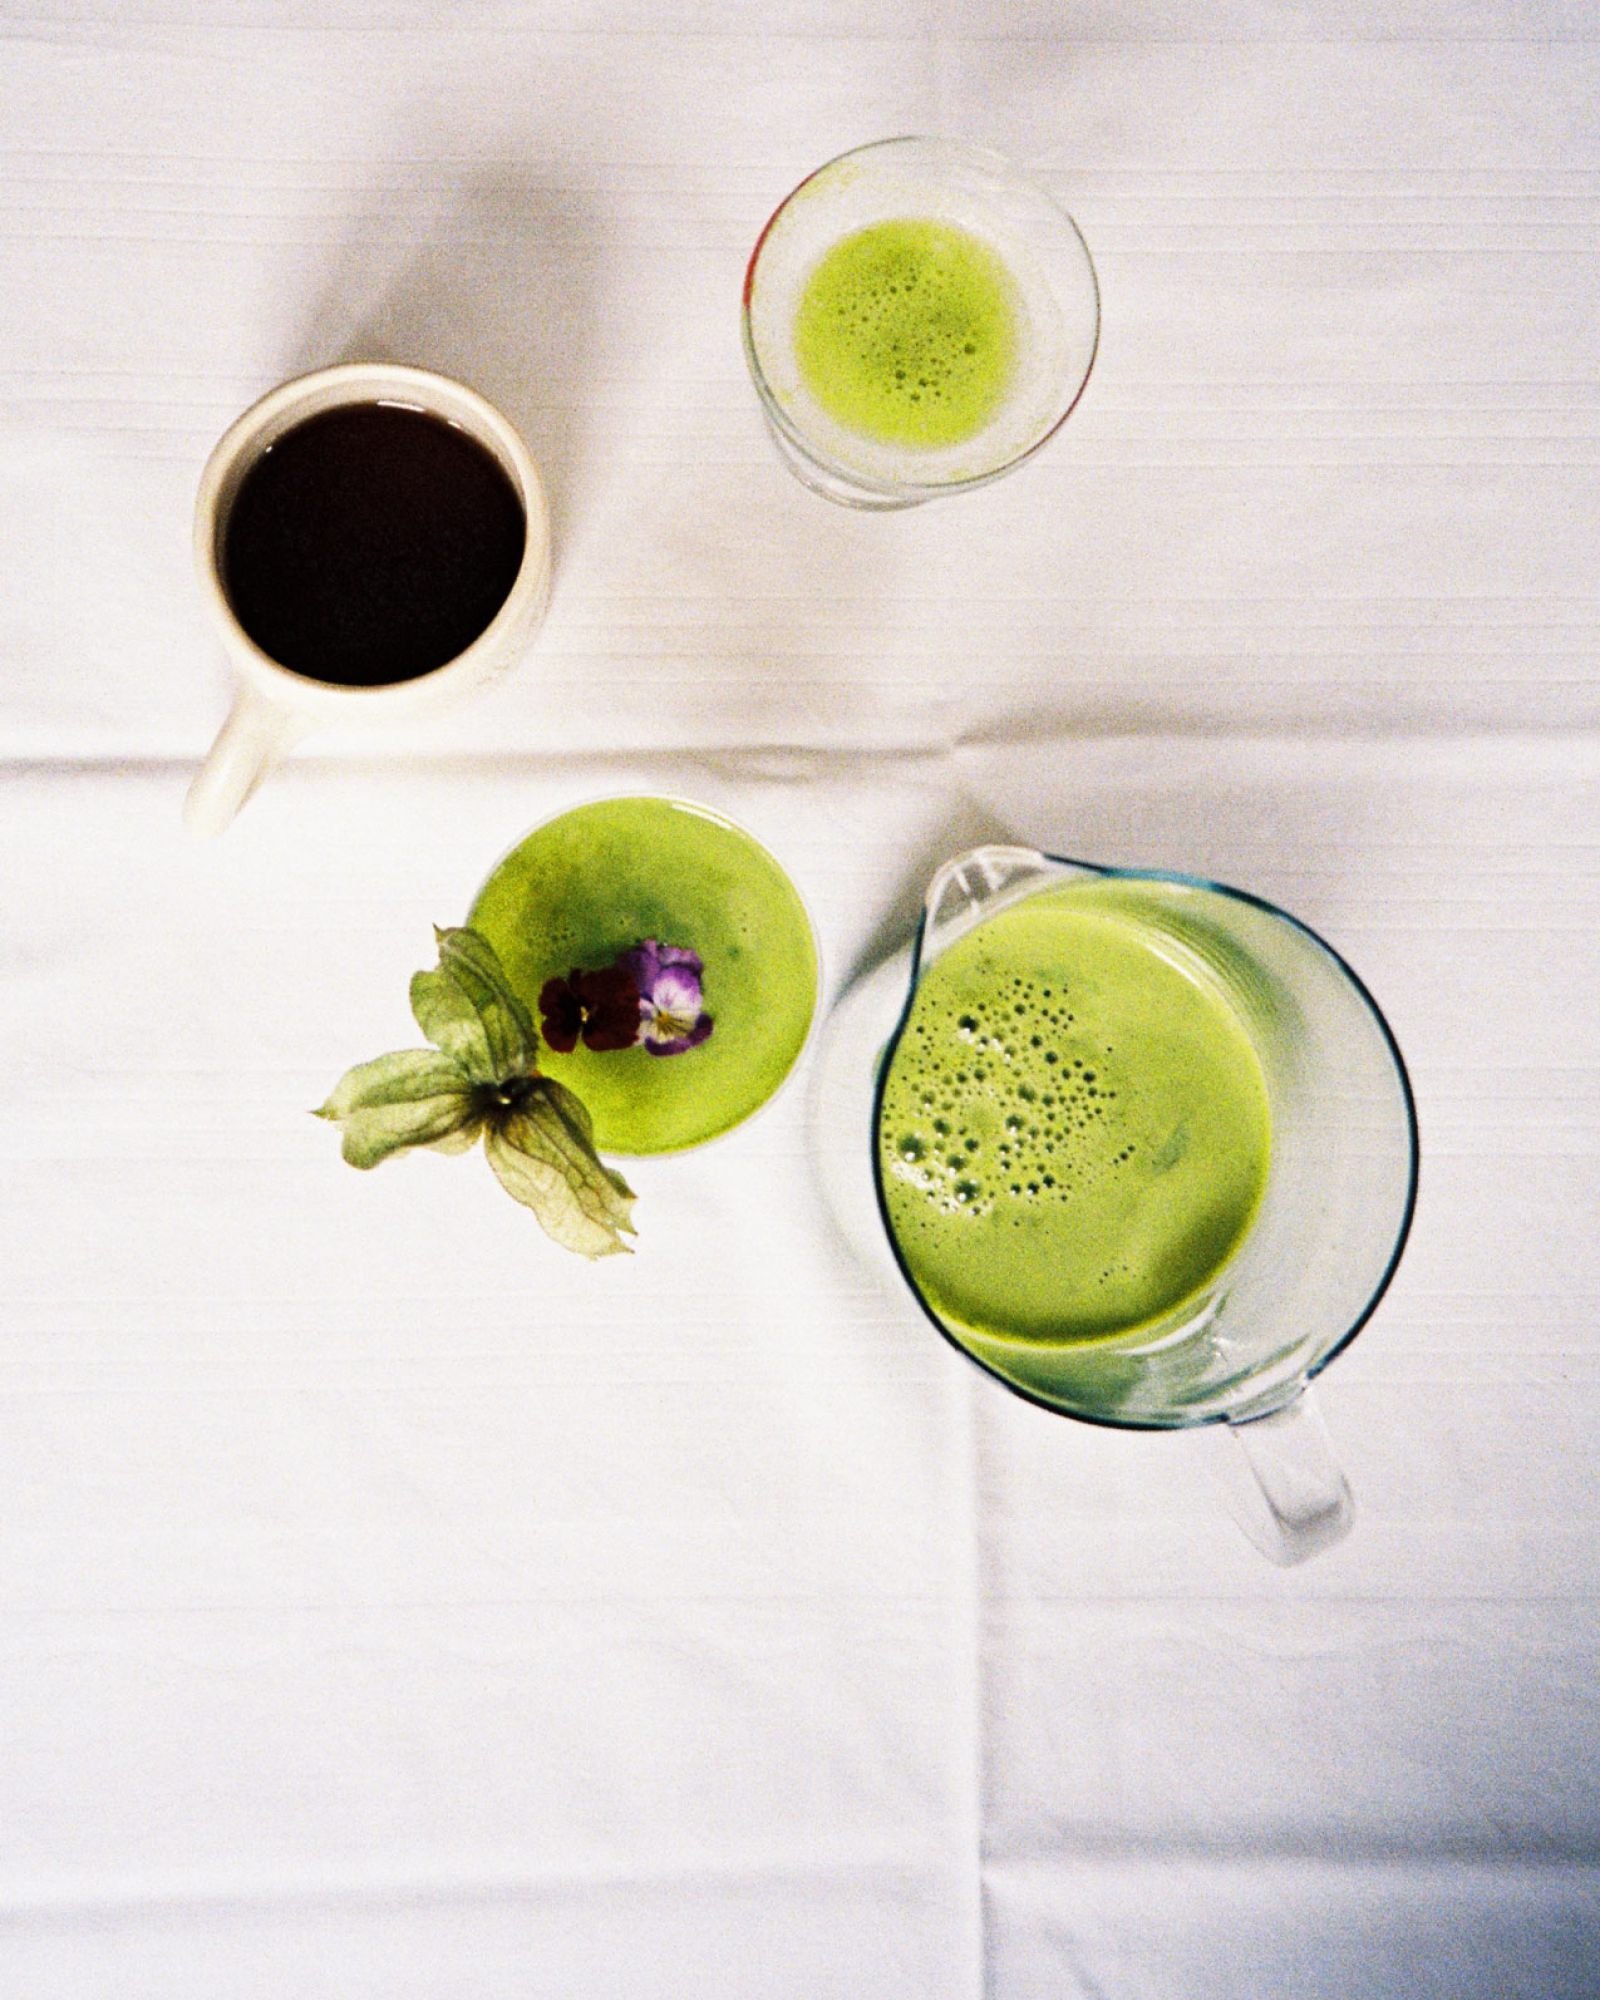 frisch gepresster grüner Saft am gemütlichen Tisch - ein nutrilicious Moment 